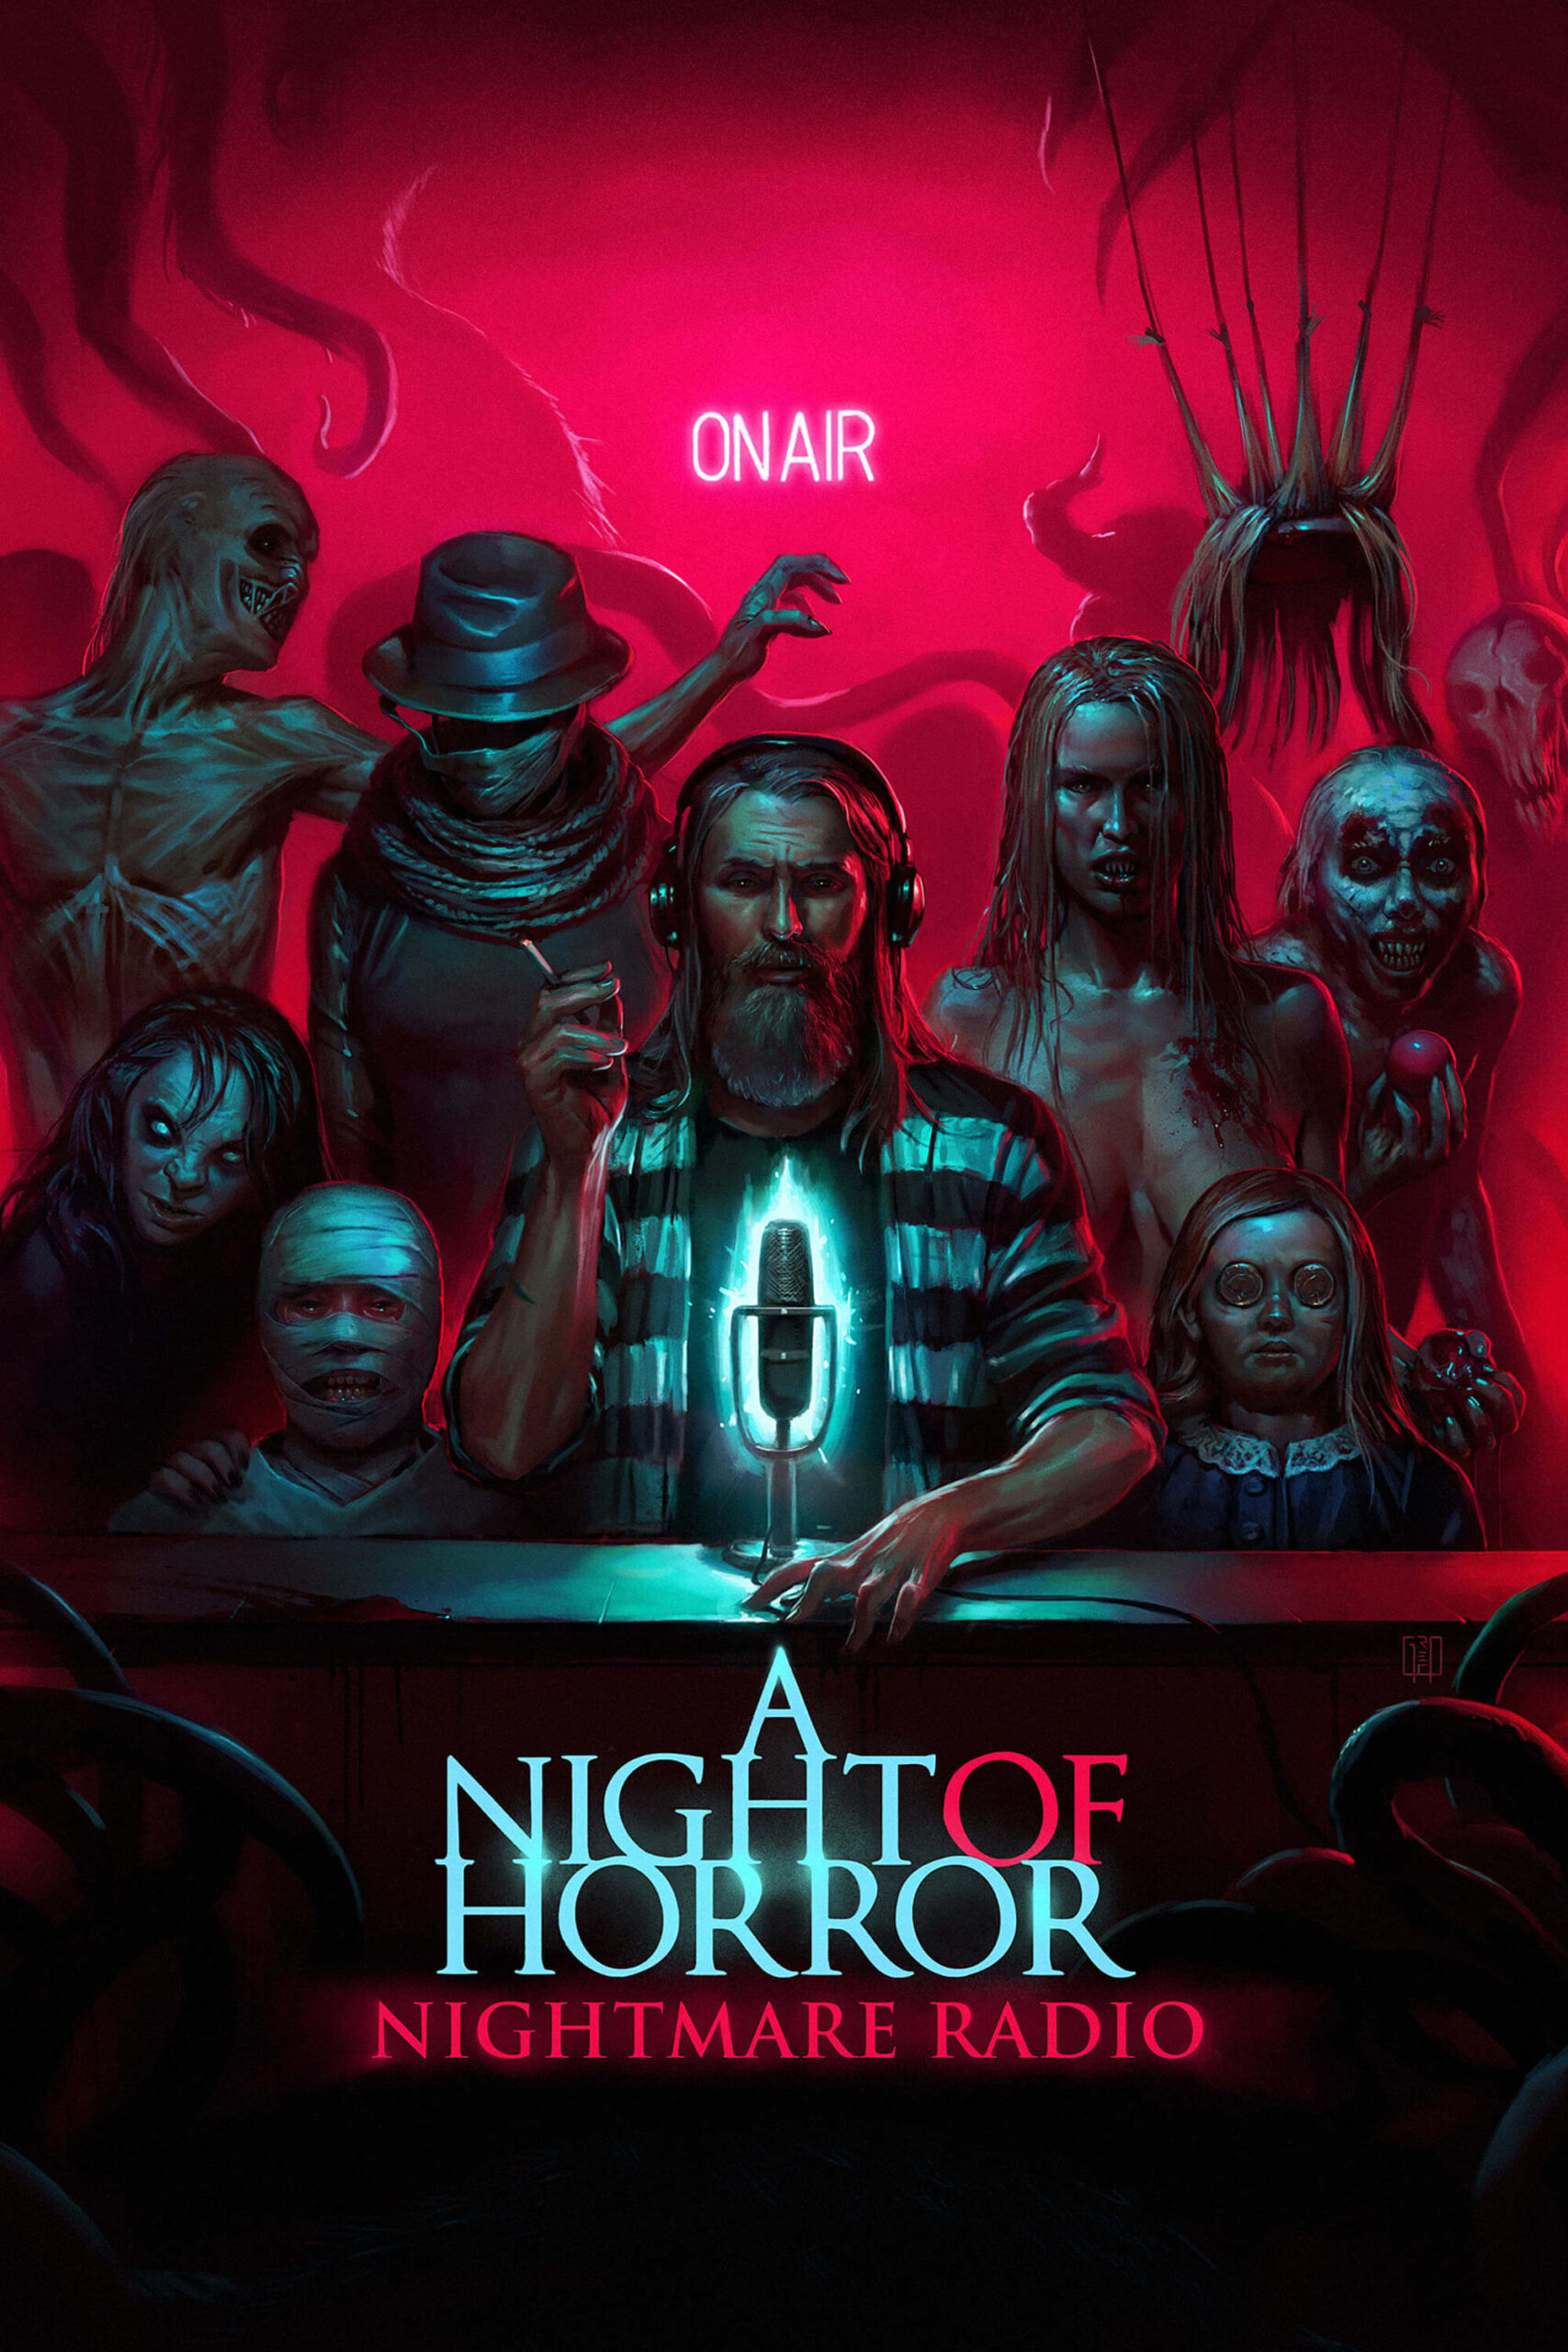 شب وحشت رادیو کابوس (A Night of Horror: Nightmare Radio)